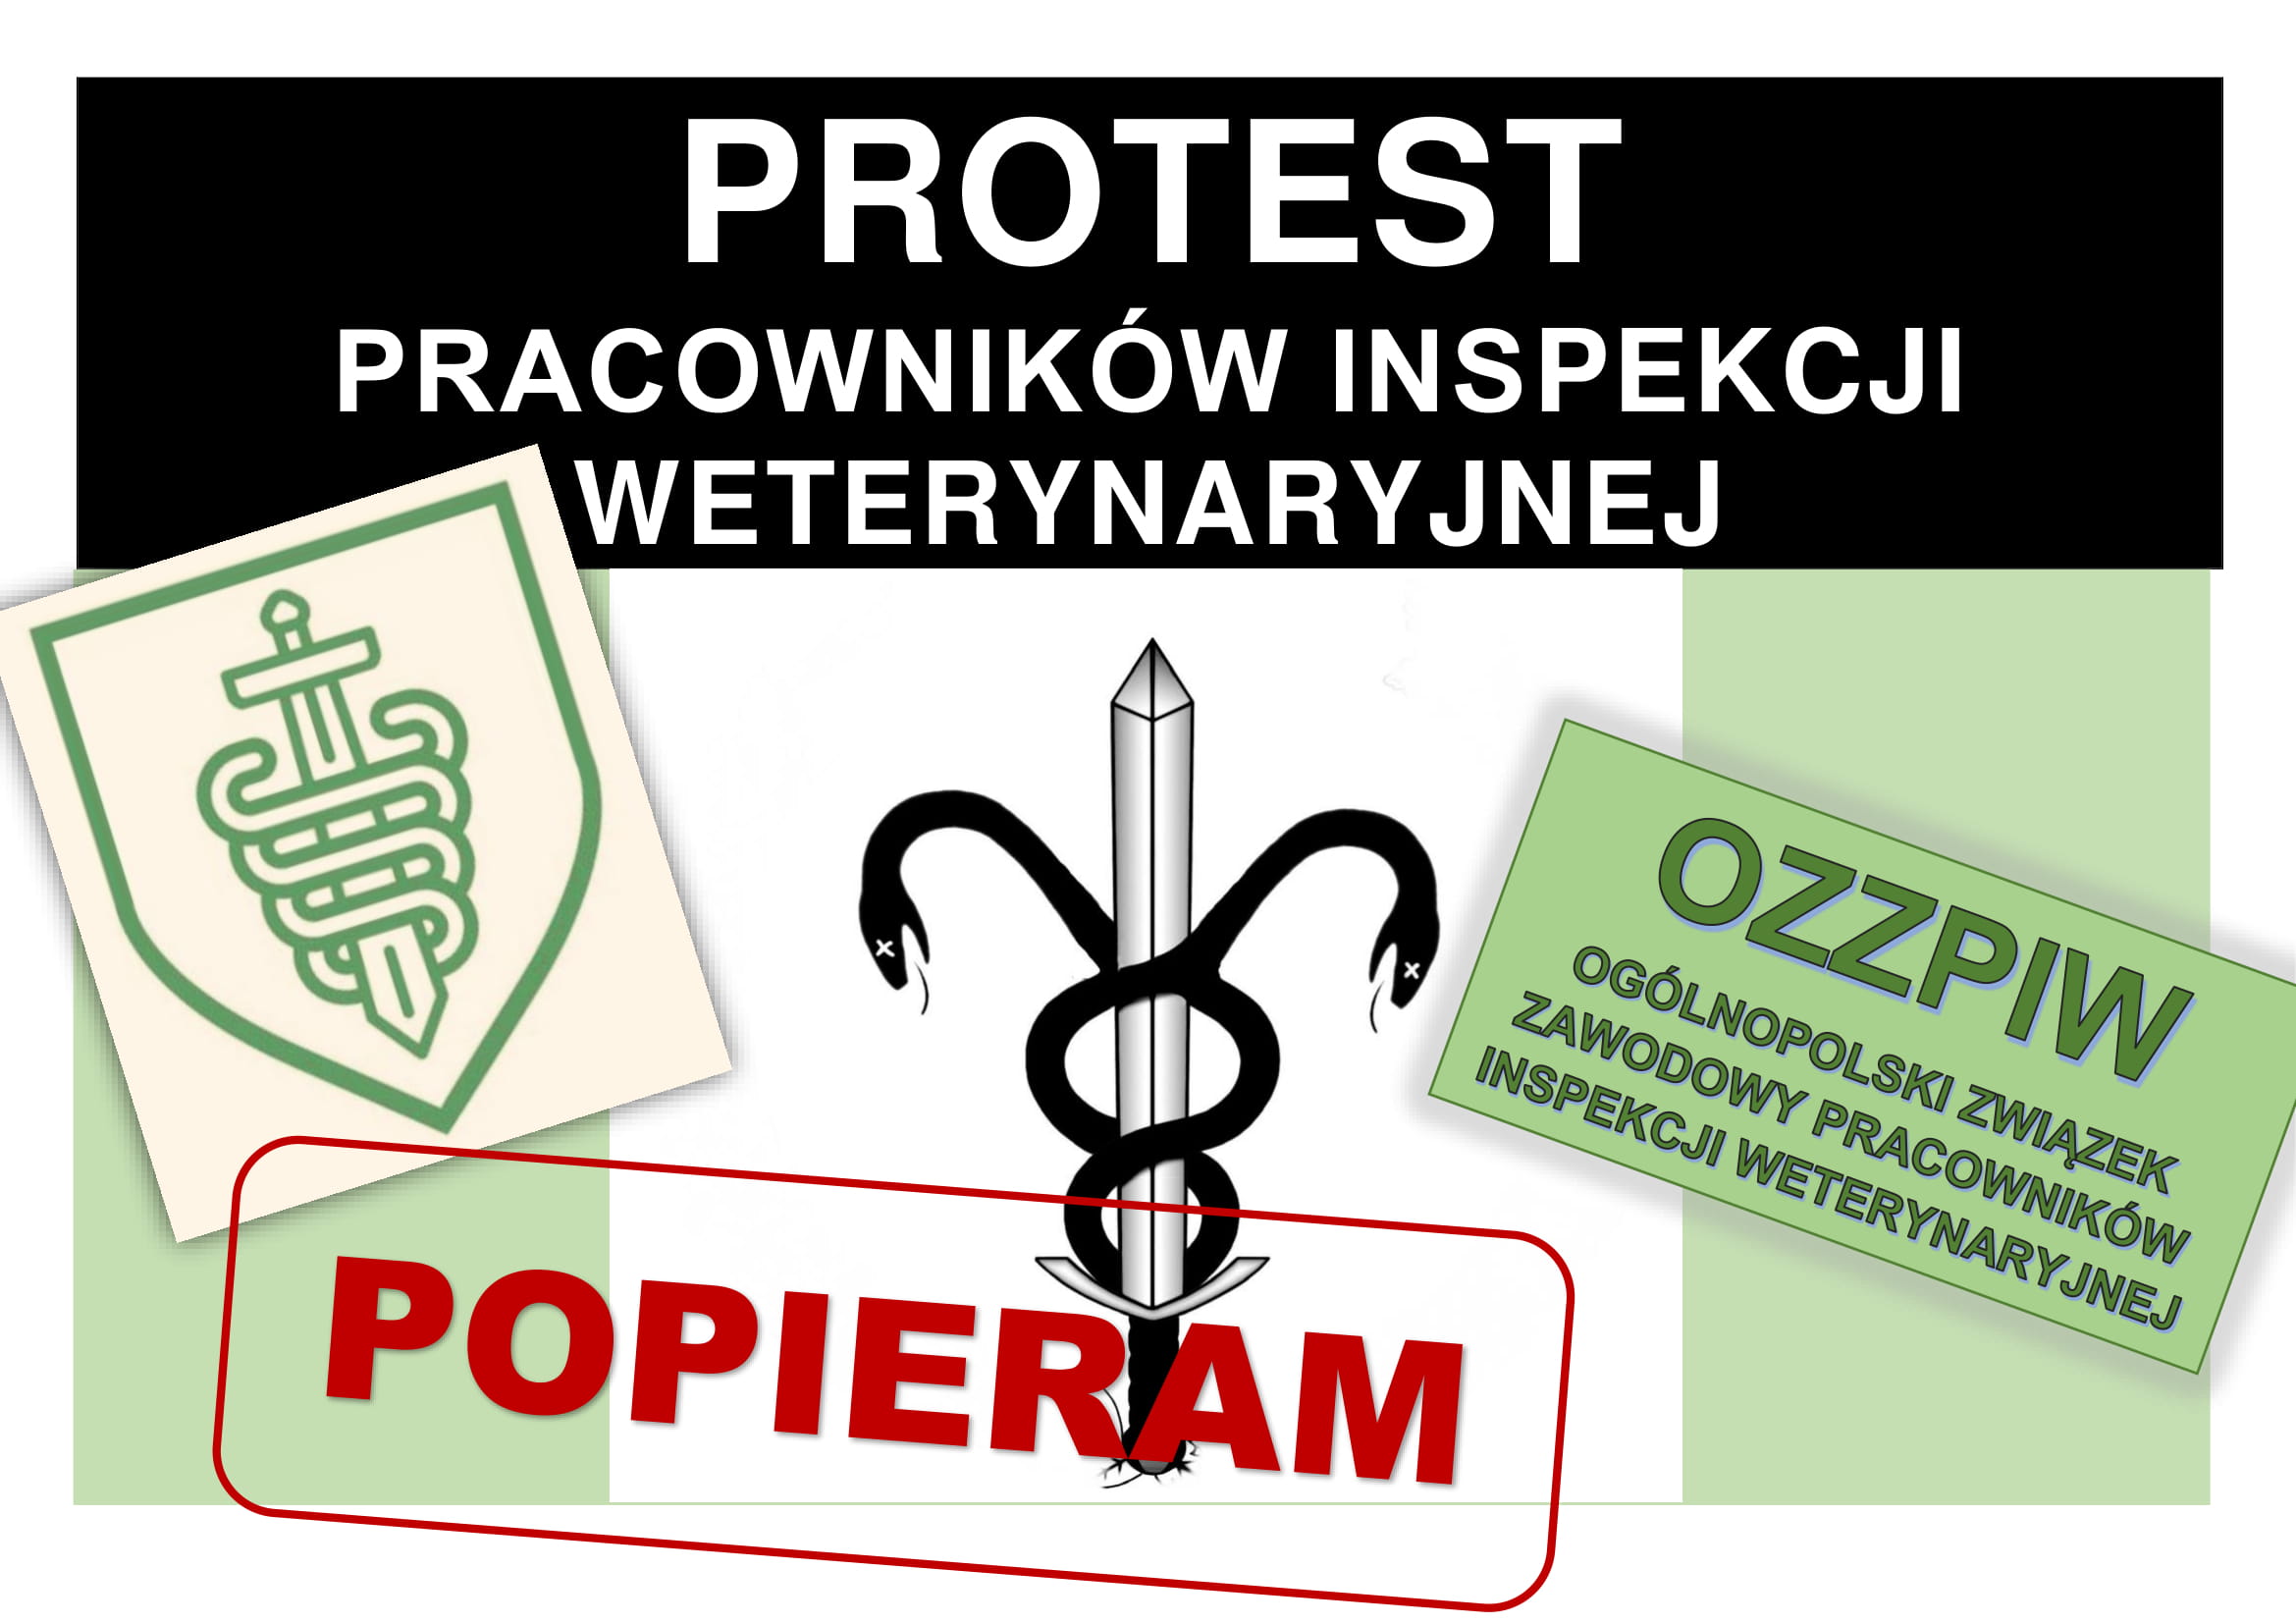 Protest Pracowników Inspekcji Weterynaryjnej – komunikat nr 9 – list poparcia protestu przez branżę mięsną